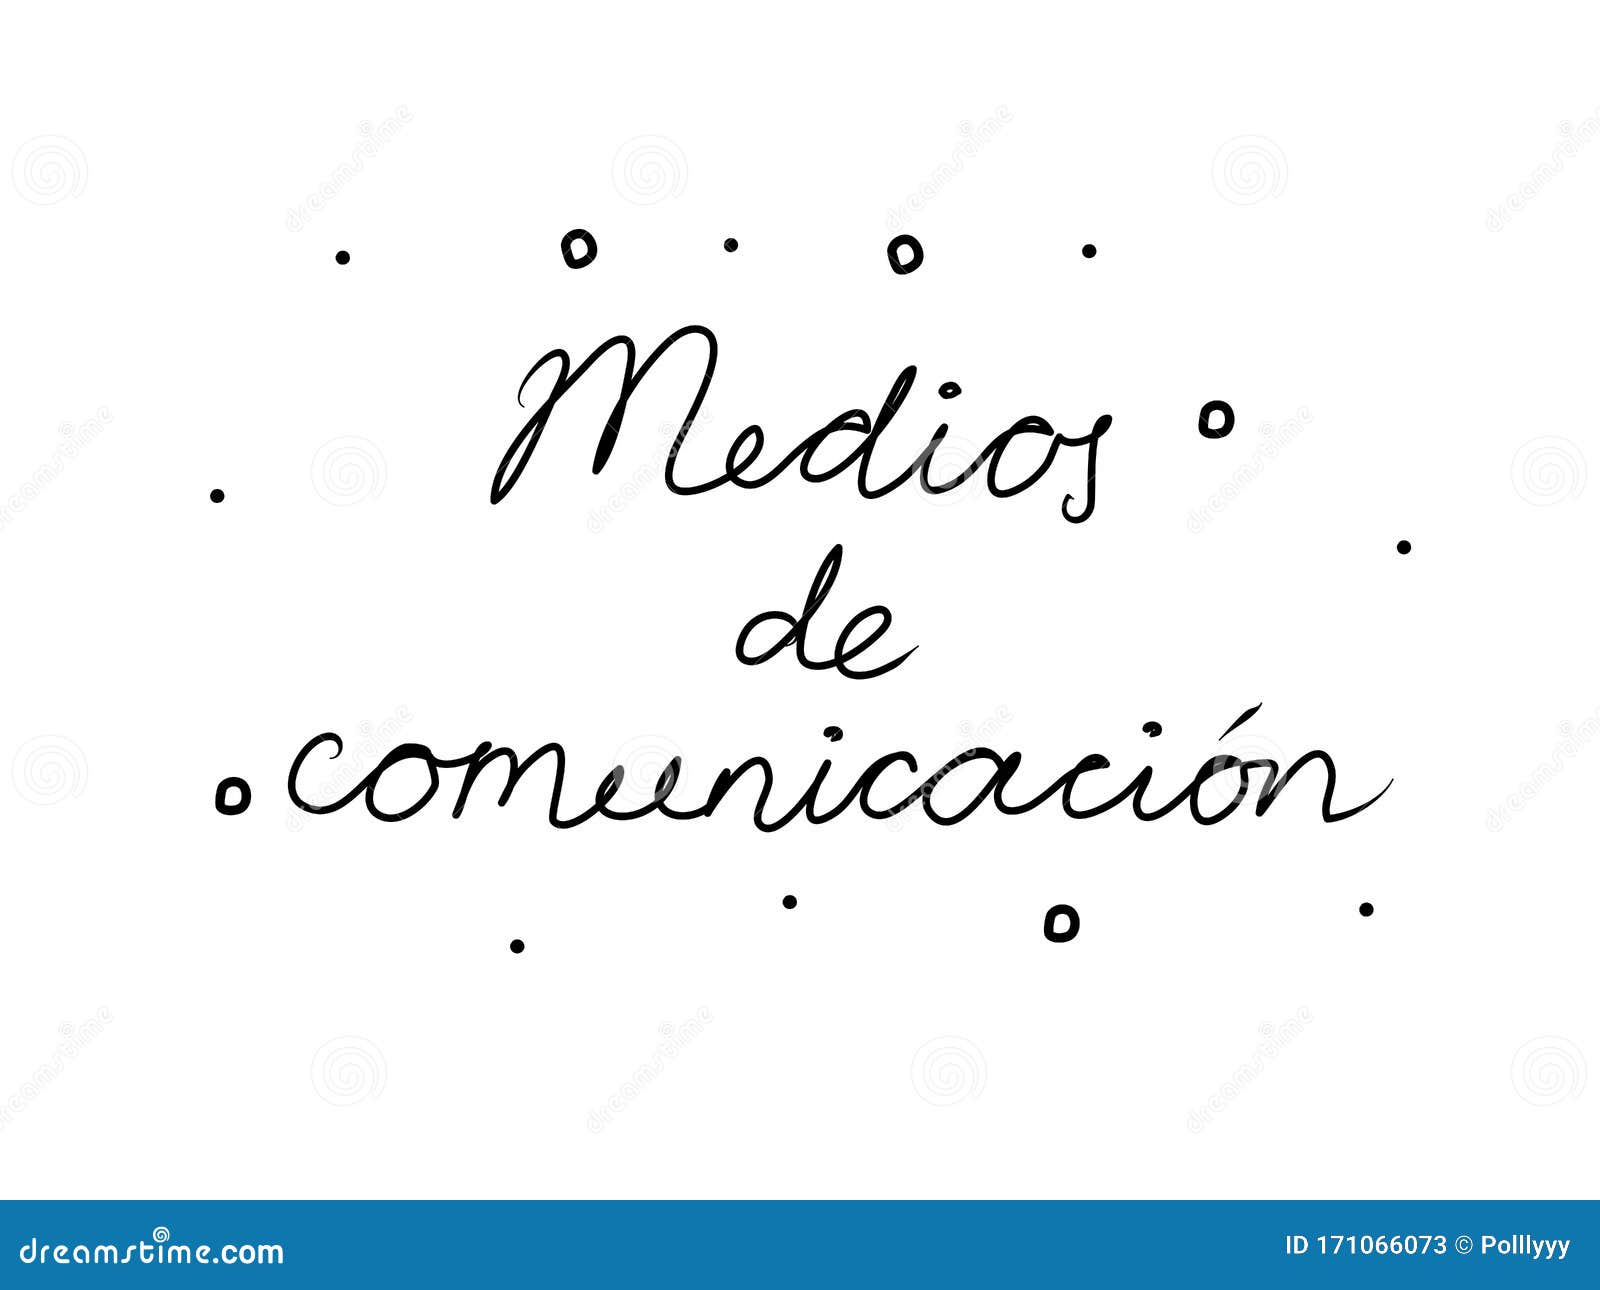 medios de comunicaciÃÂ³n phrase handwritten with a calligraphy brush. media in spanish. modern brush calligraphy.  word